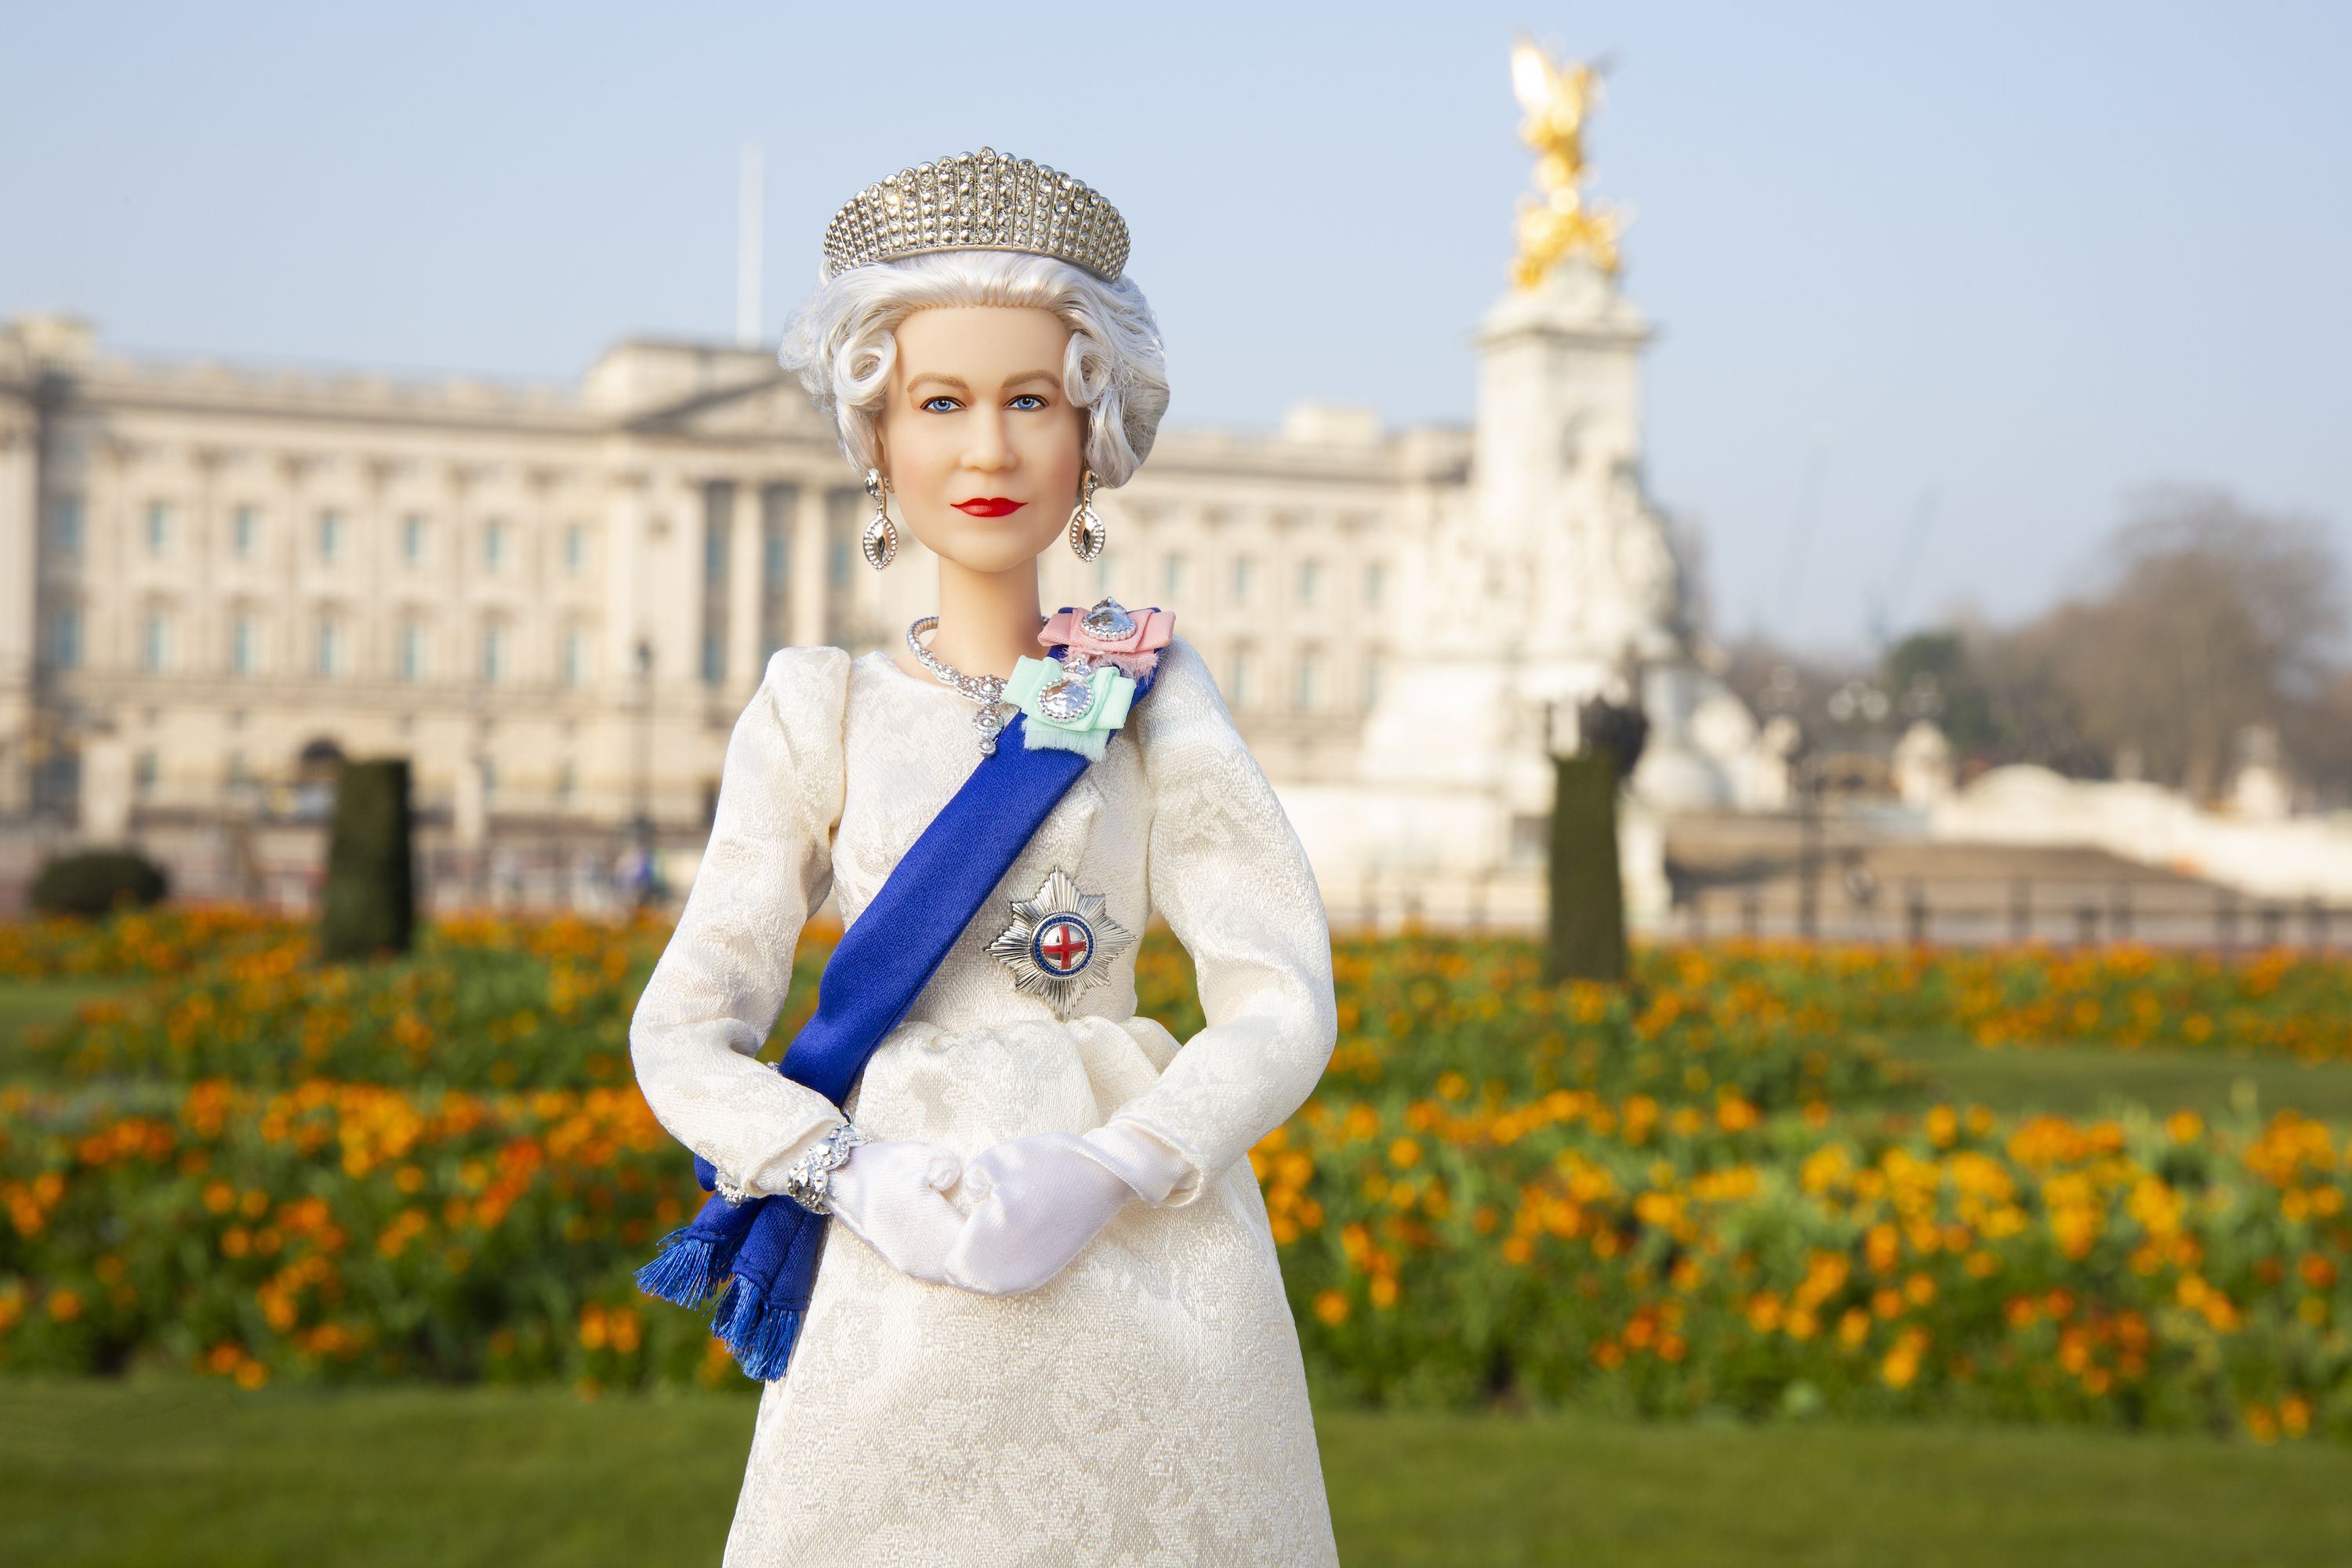 Blue & White Flowers Design Made for Barbie Dolls ball gown dress UK Seller 